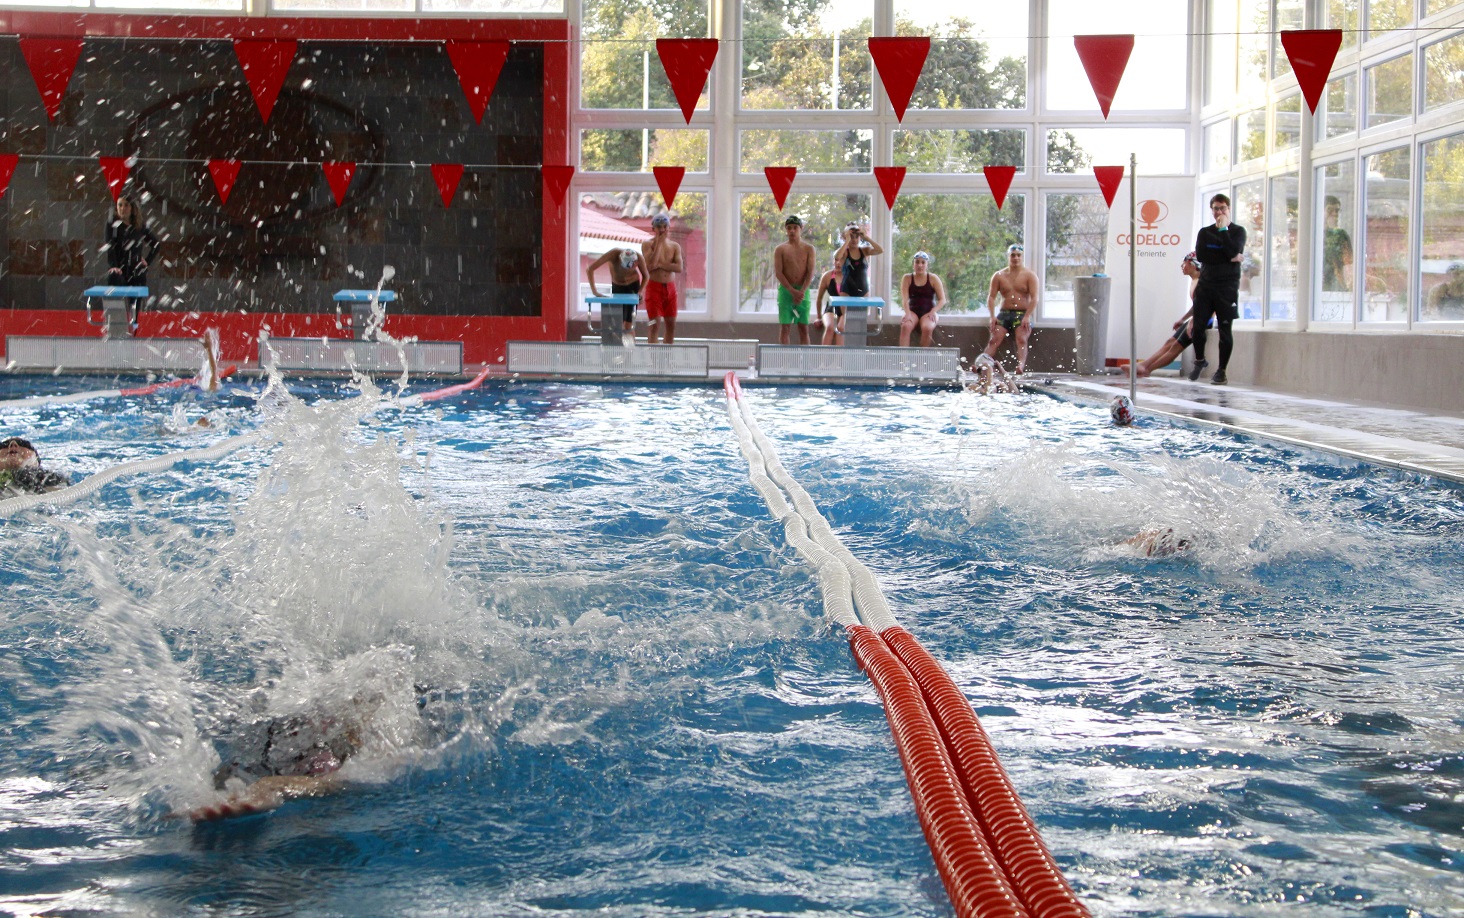 Piscina del estadio El Teniente será sede del clasificatorio regional de natación escolar